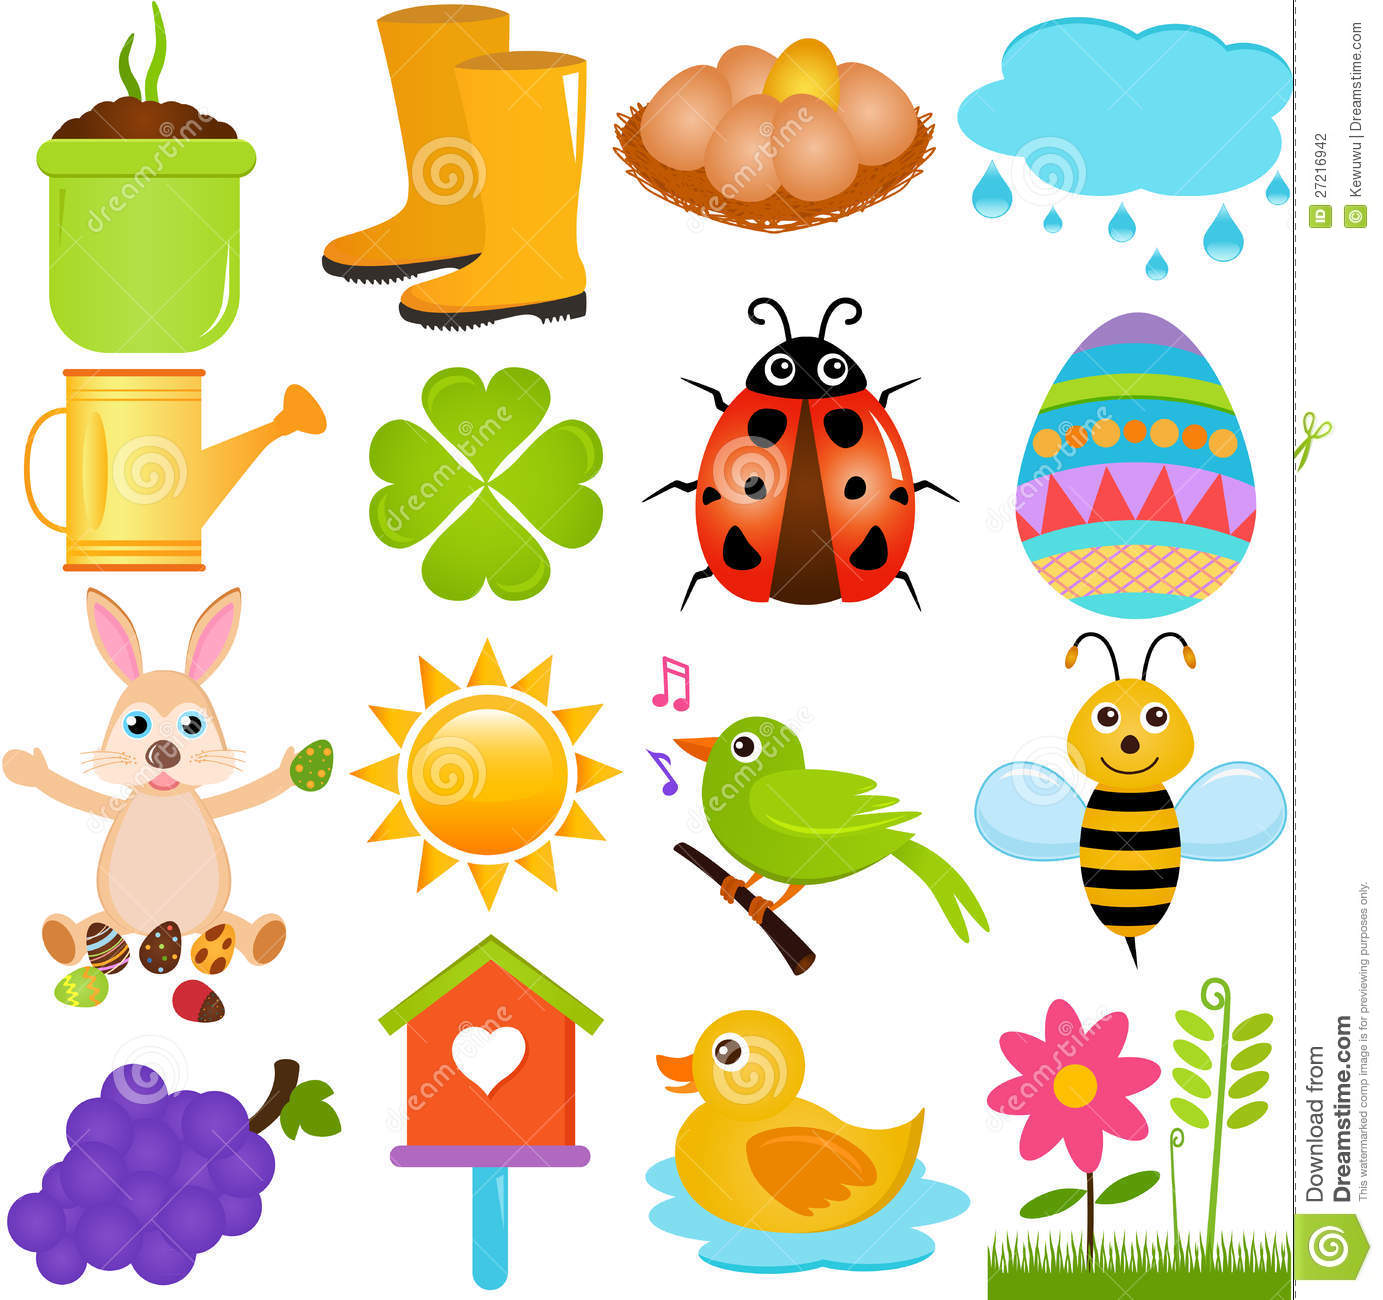 Vector Icons : Spring Season Theme Stock Photography